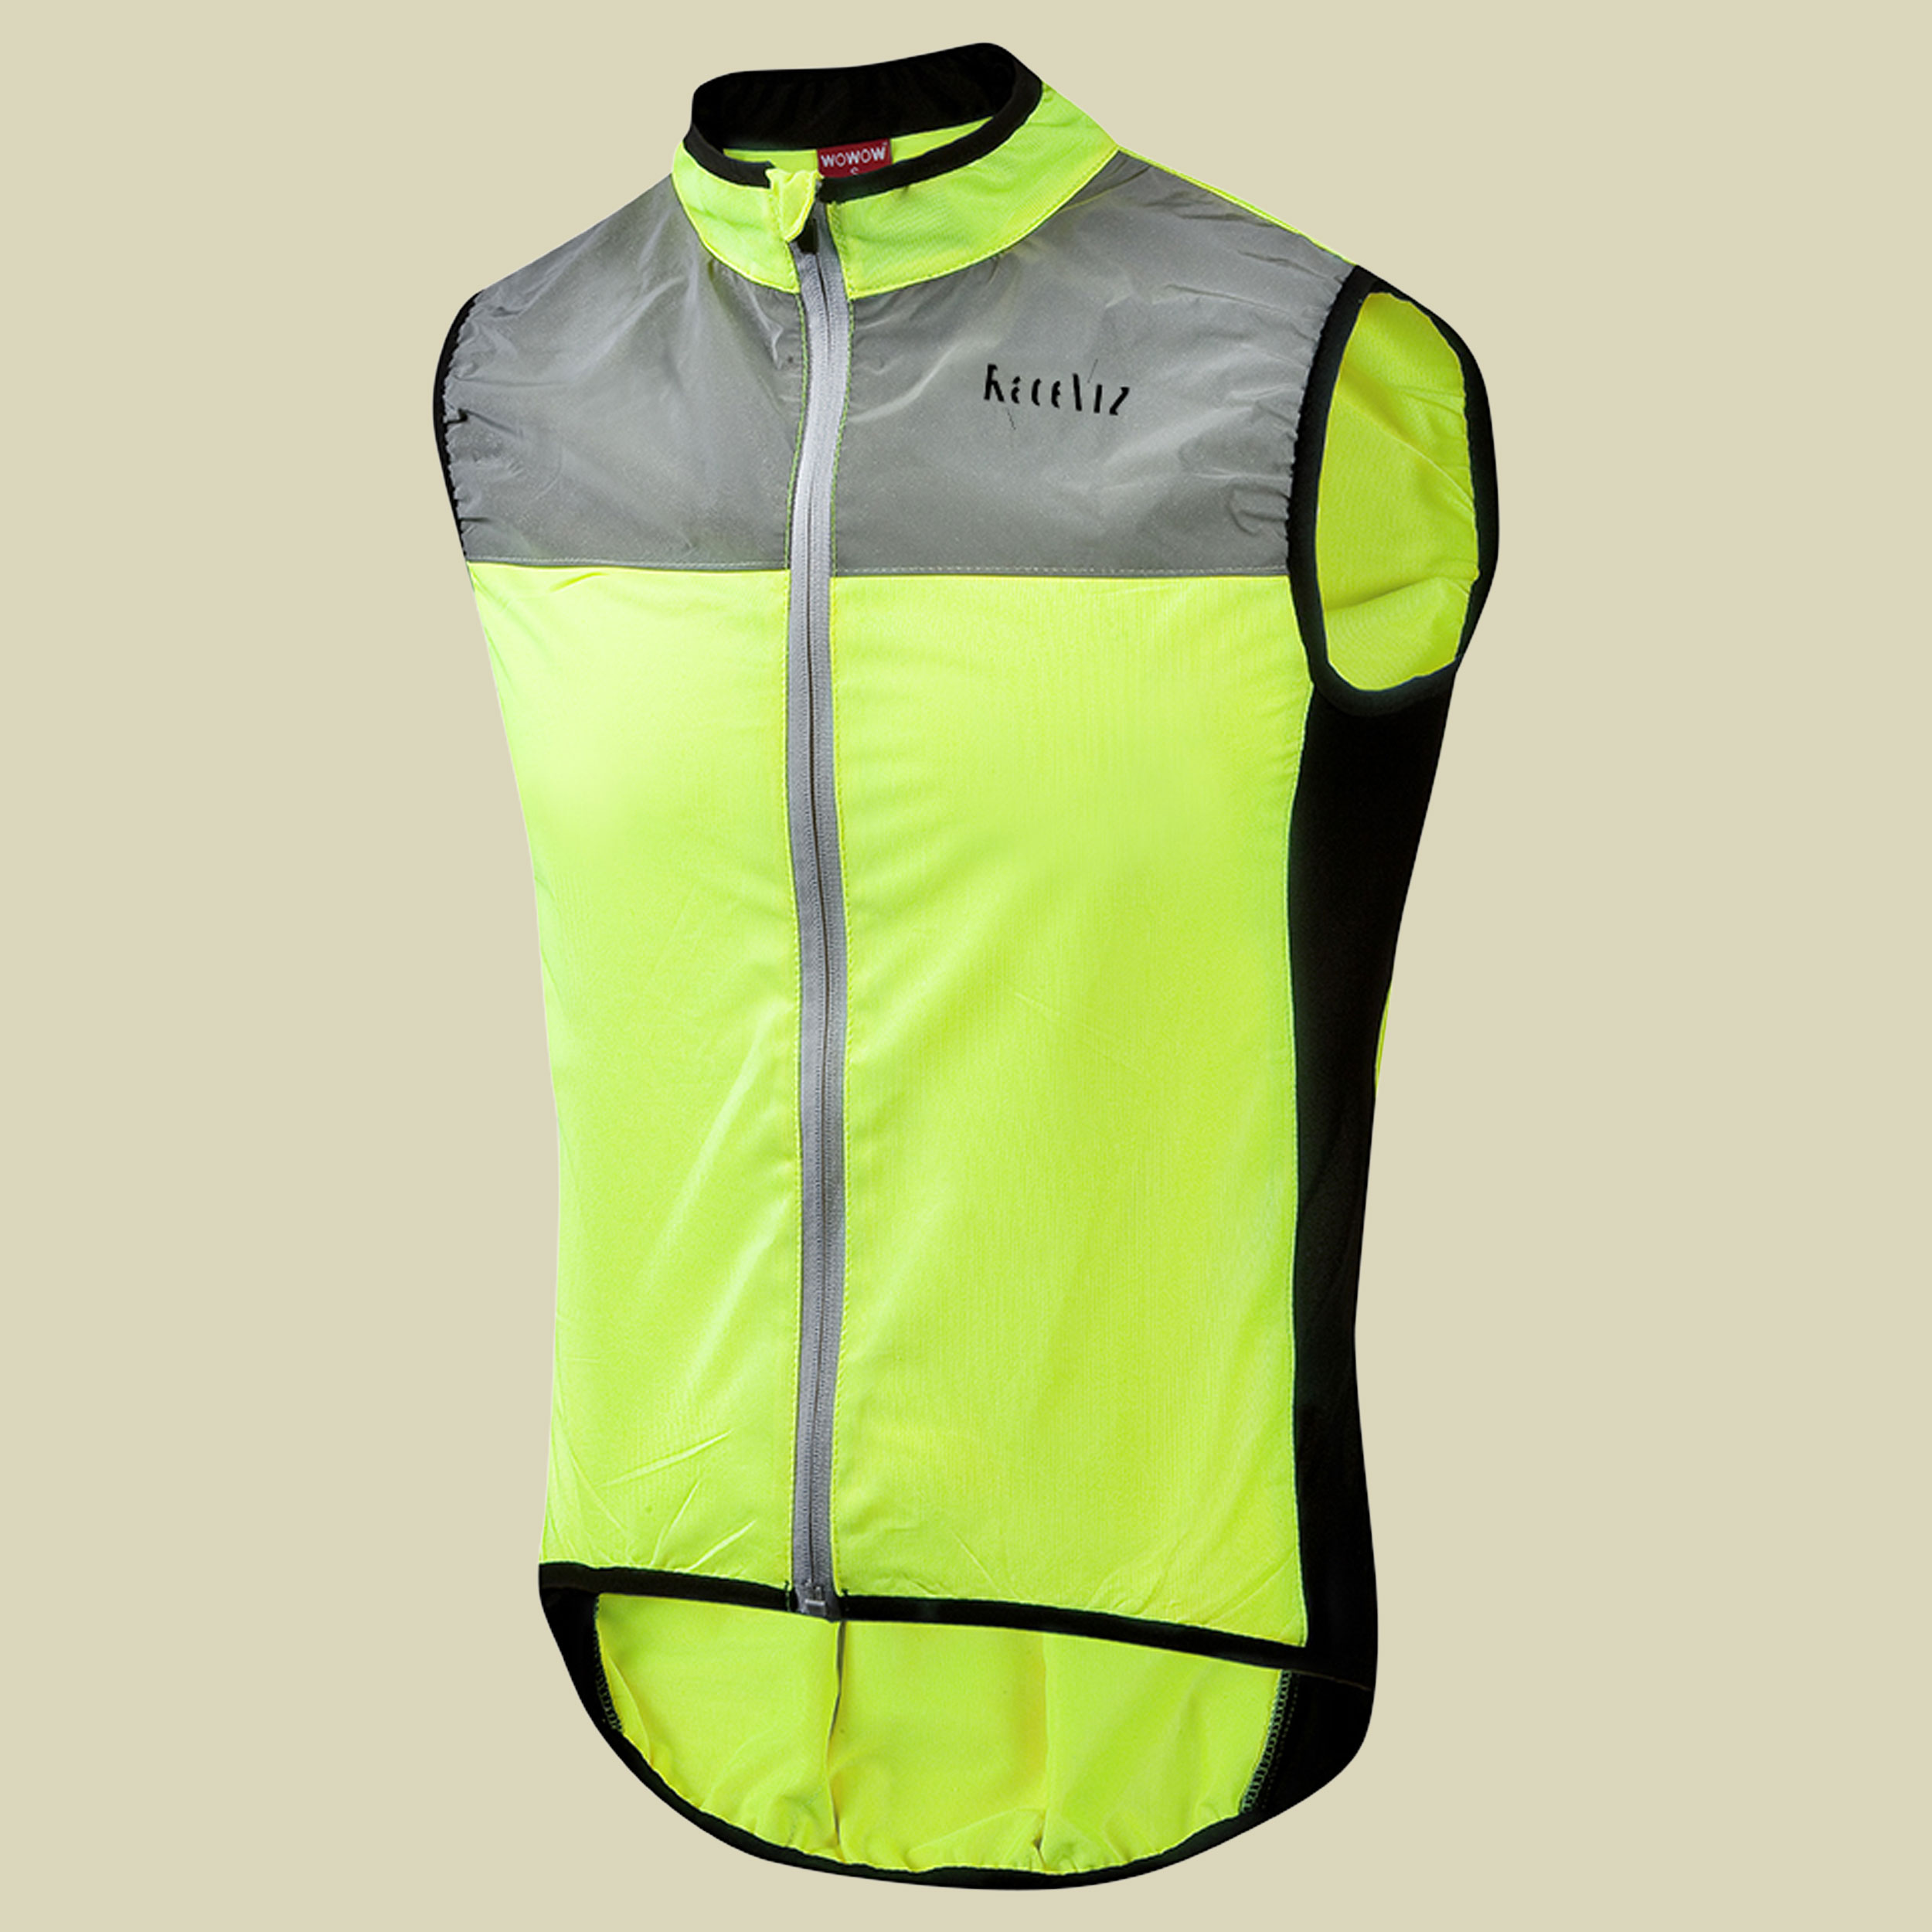 Wowow - Dark Jacket 1.1-Unisex reflektierende Weste Fahrrad- naturzeit